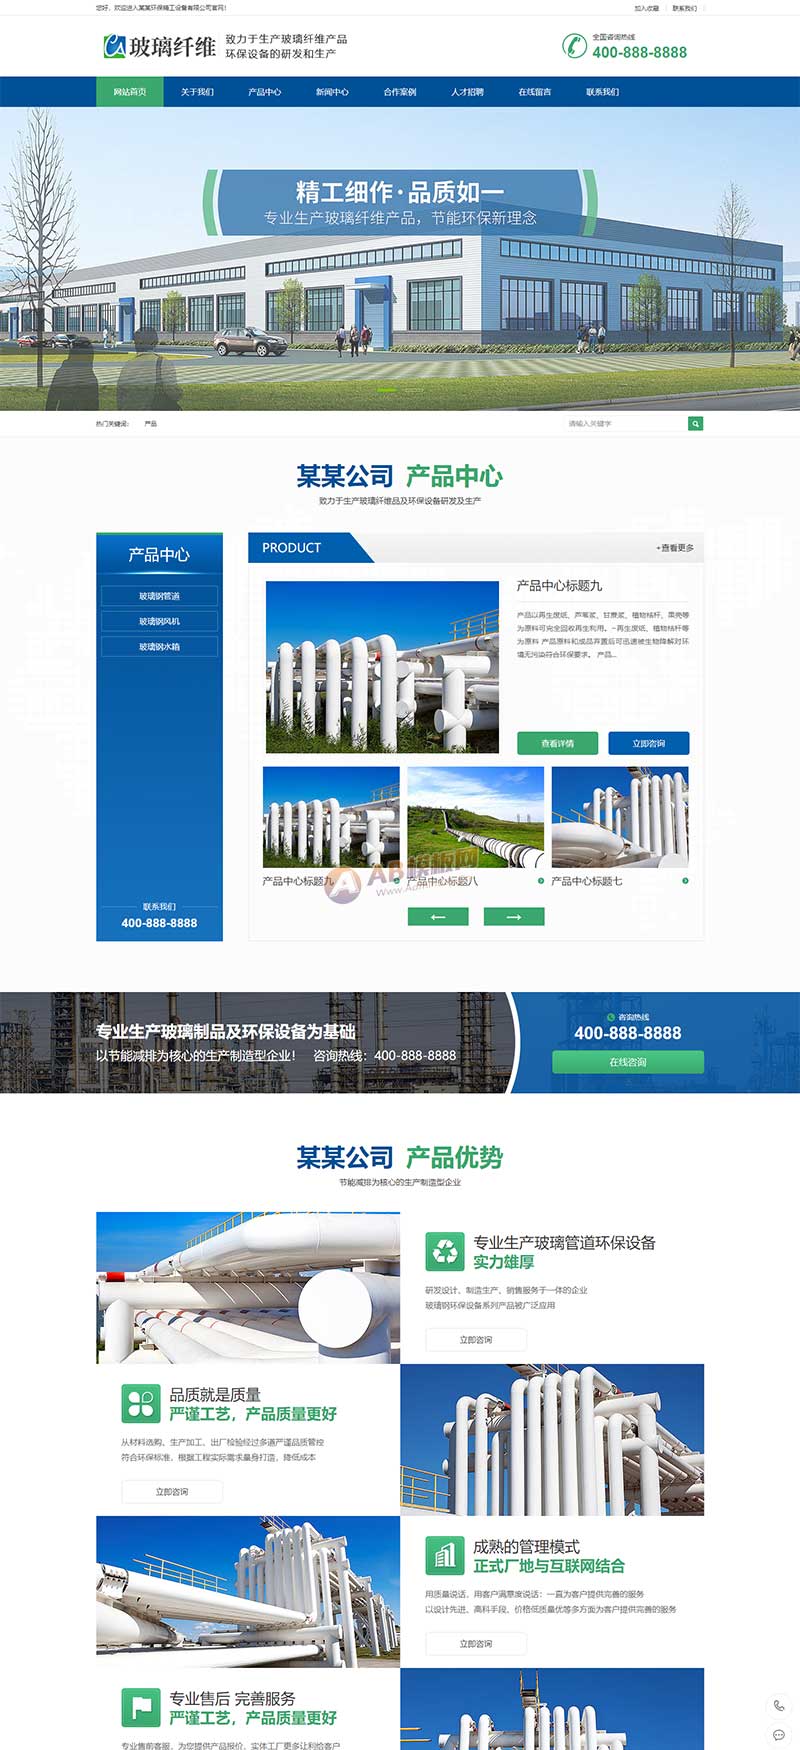 (PC+WAP)蓝色玻璃纤维制品网站 营销型环保设备